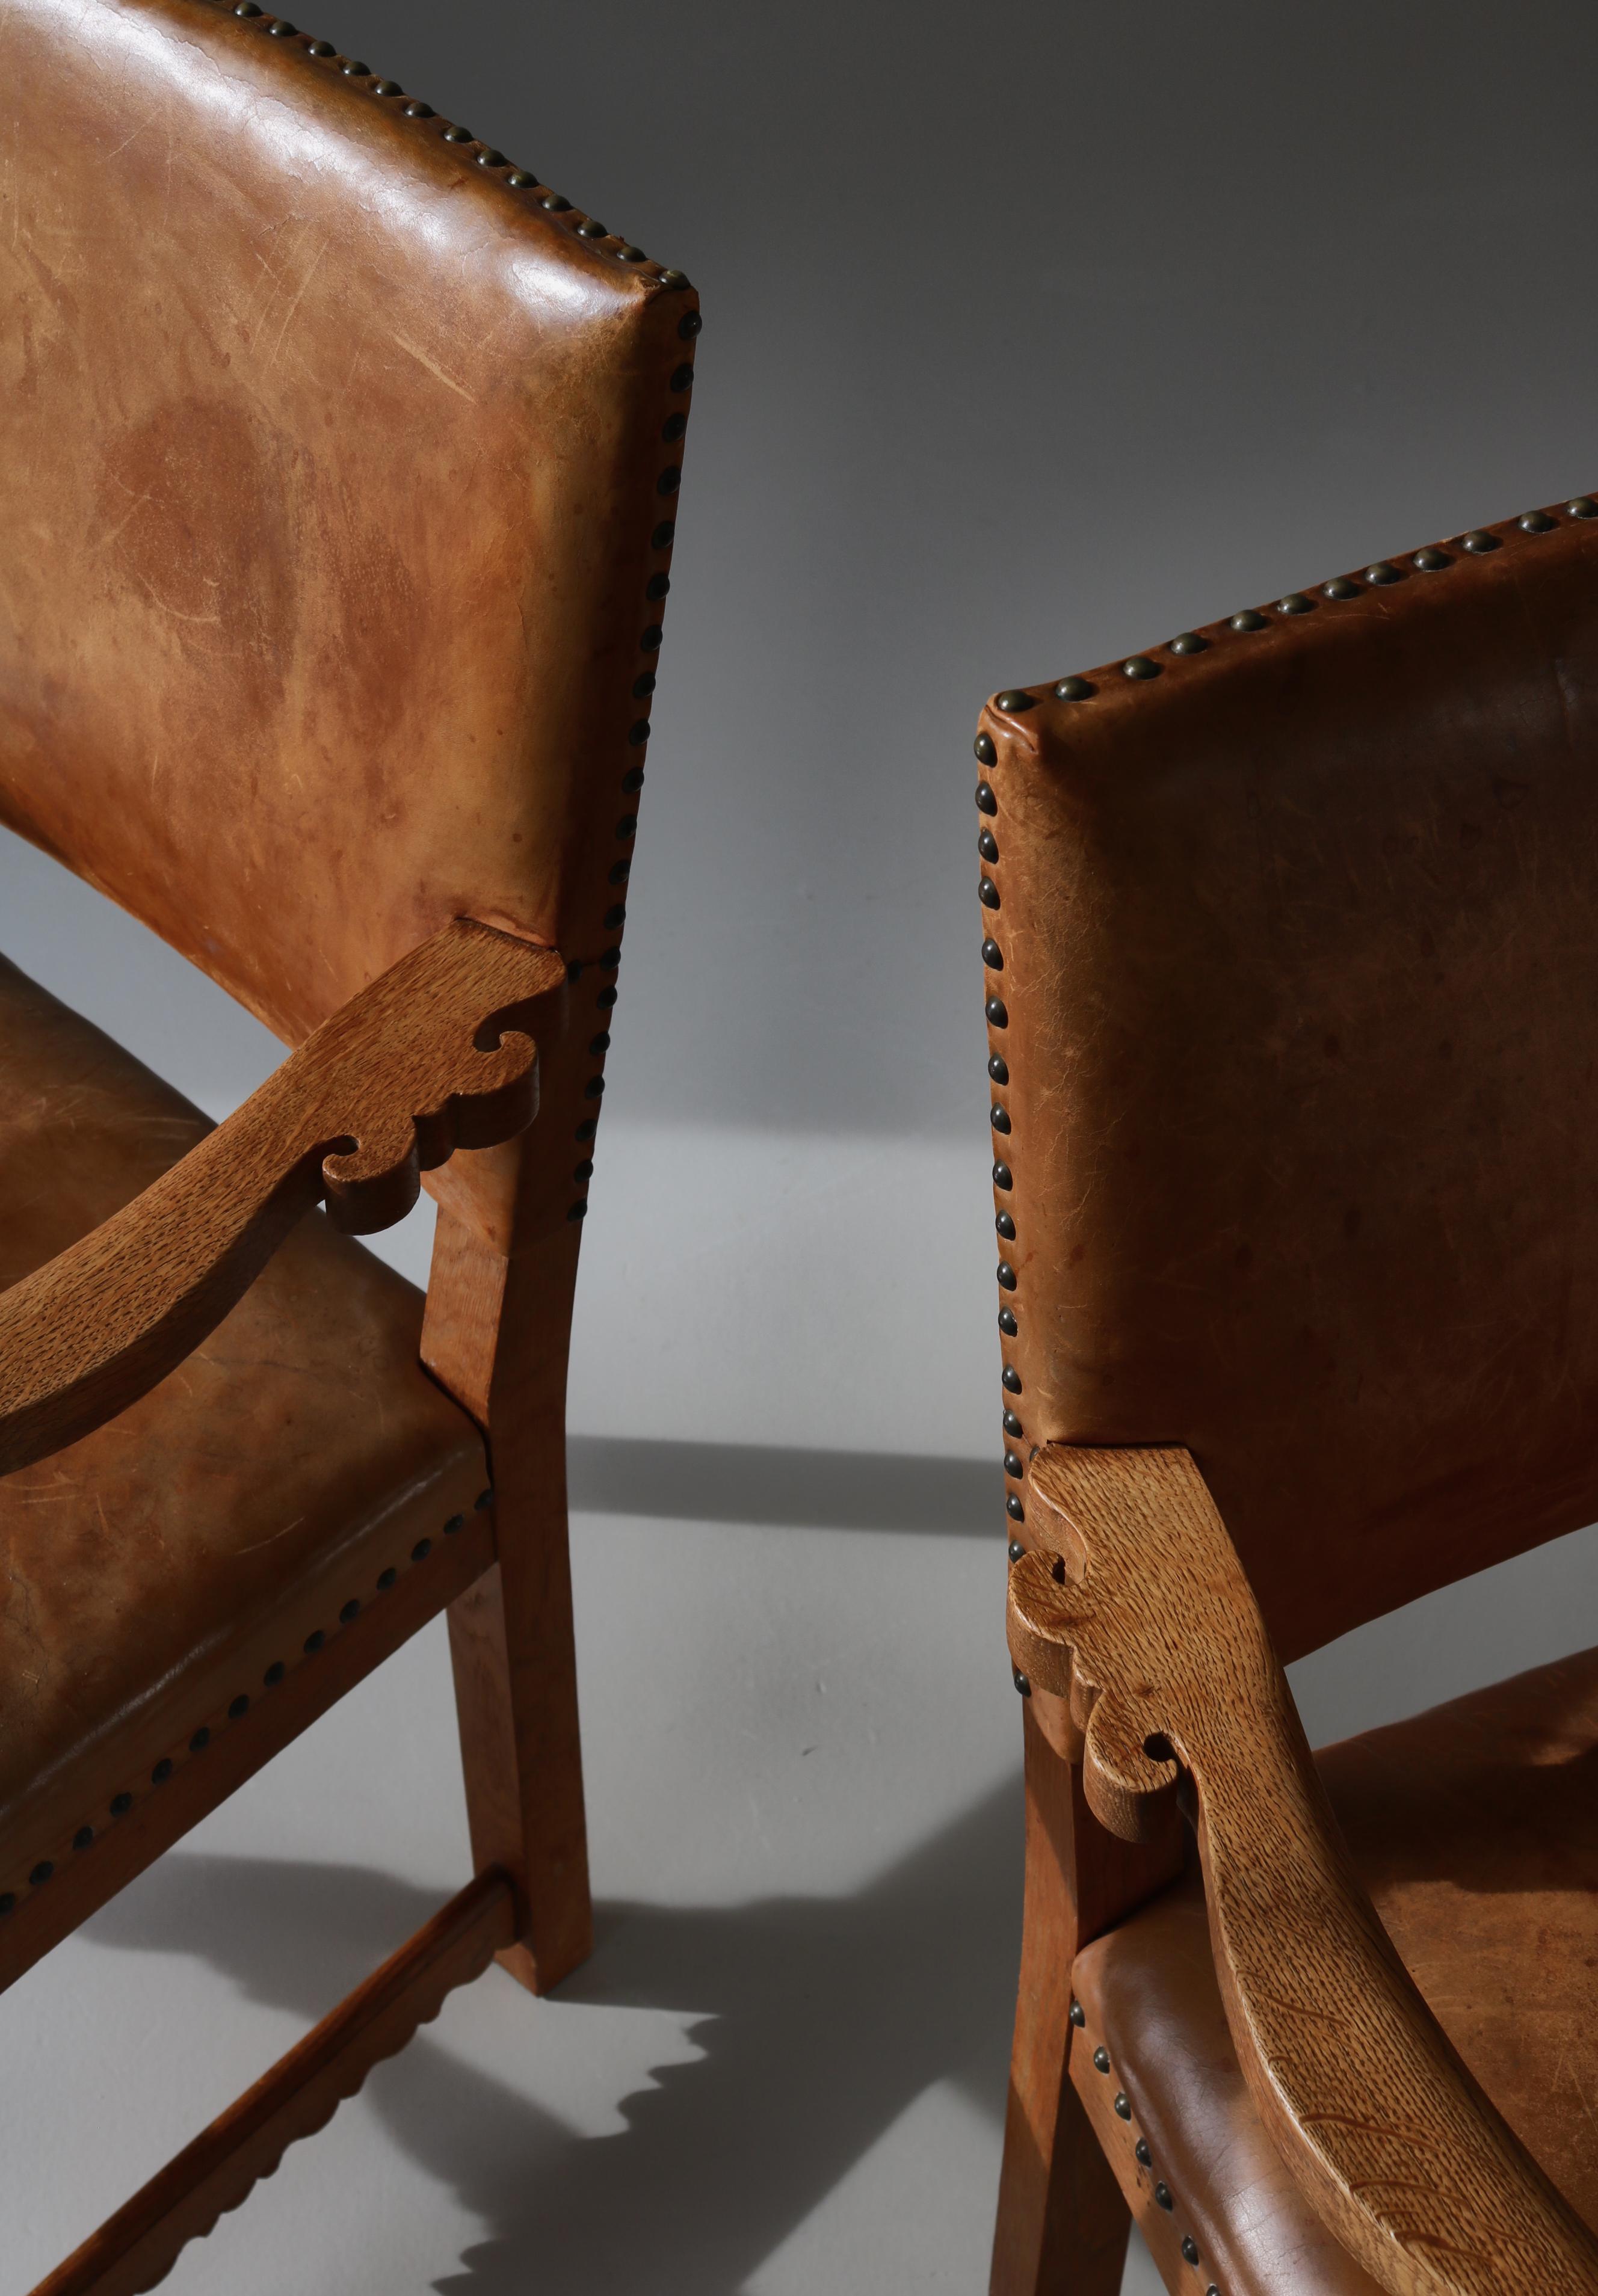 Superbe paire de fauteuils sculpturaux en chêne massif et cuir naturel fabriqués par le maître ébéniste danois Lars Møller, à Copenhague, dans les années 1930. Les chaises sont modernes mais avec une expression ludique et de nombreux détails